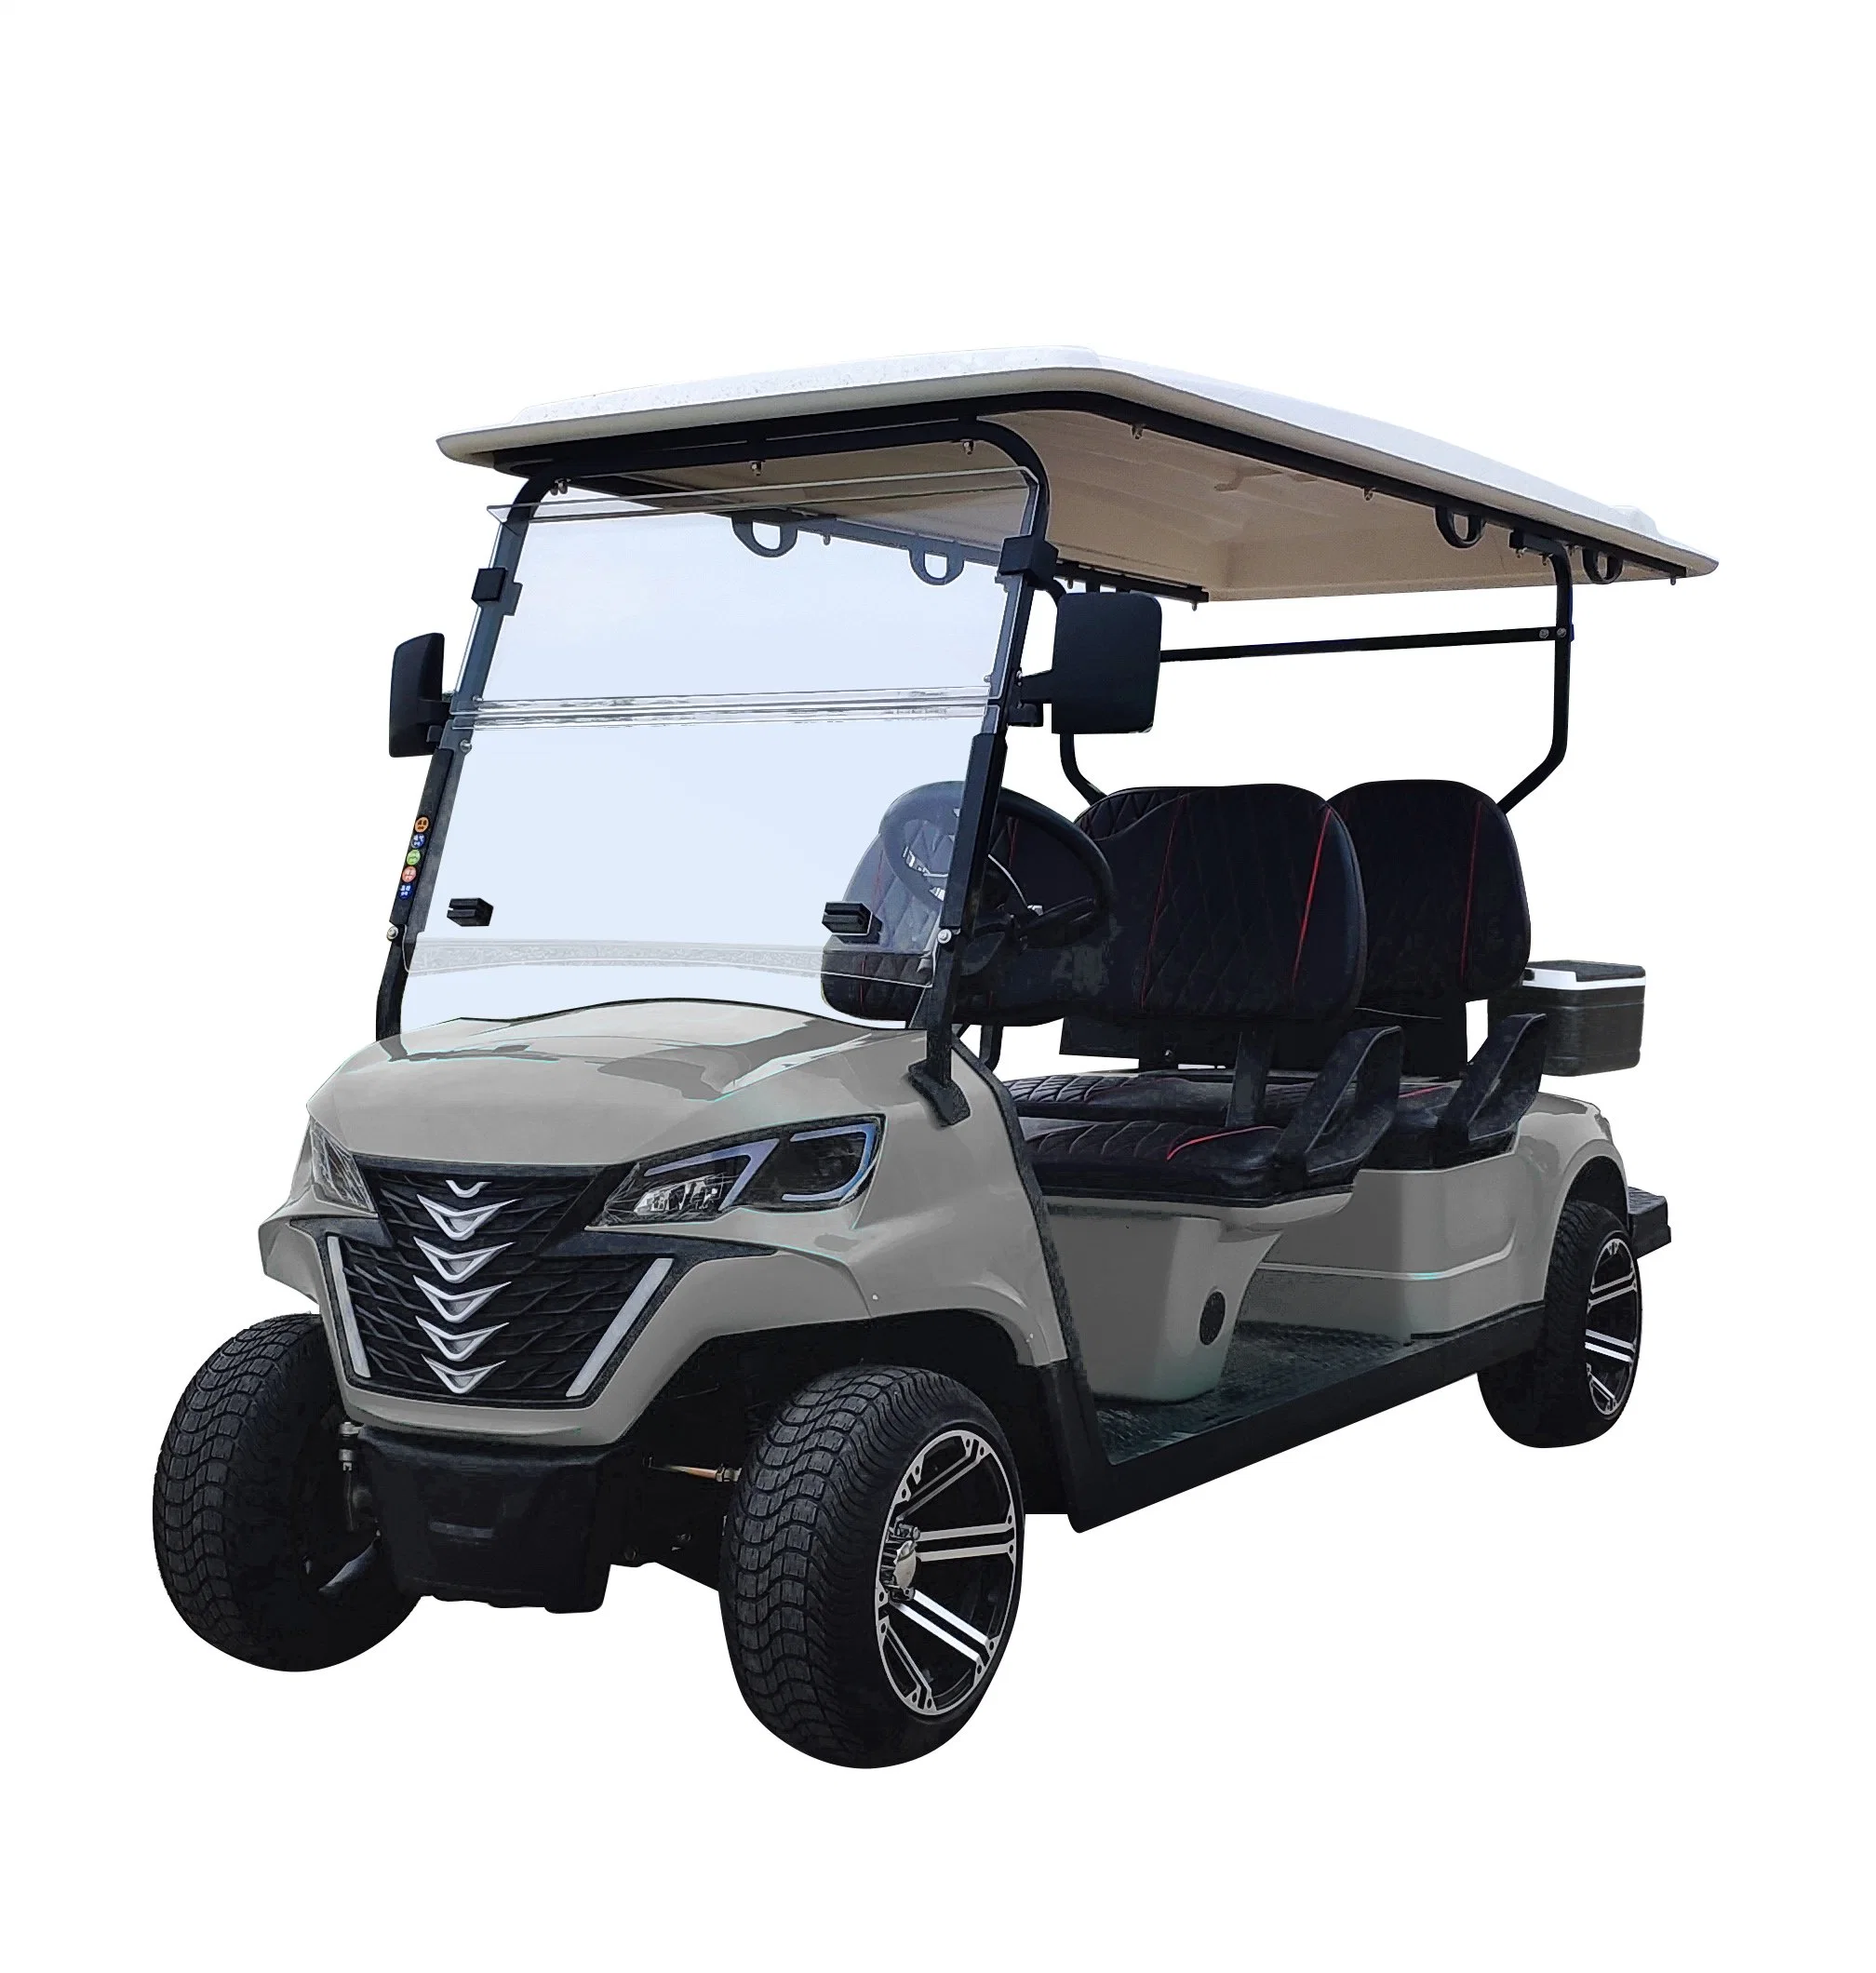 Forge G4 Custom 4 lugares 48V 5kw Golf Cart with Carro de golfe de preço competitivo Buggy